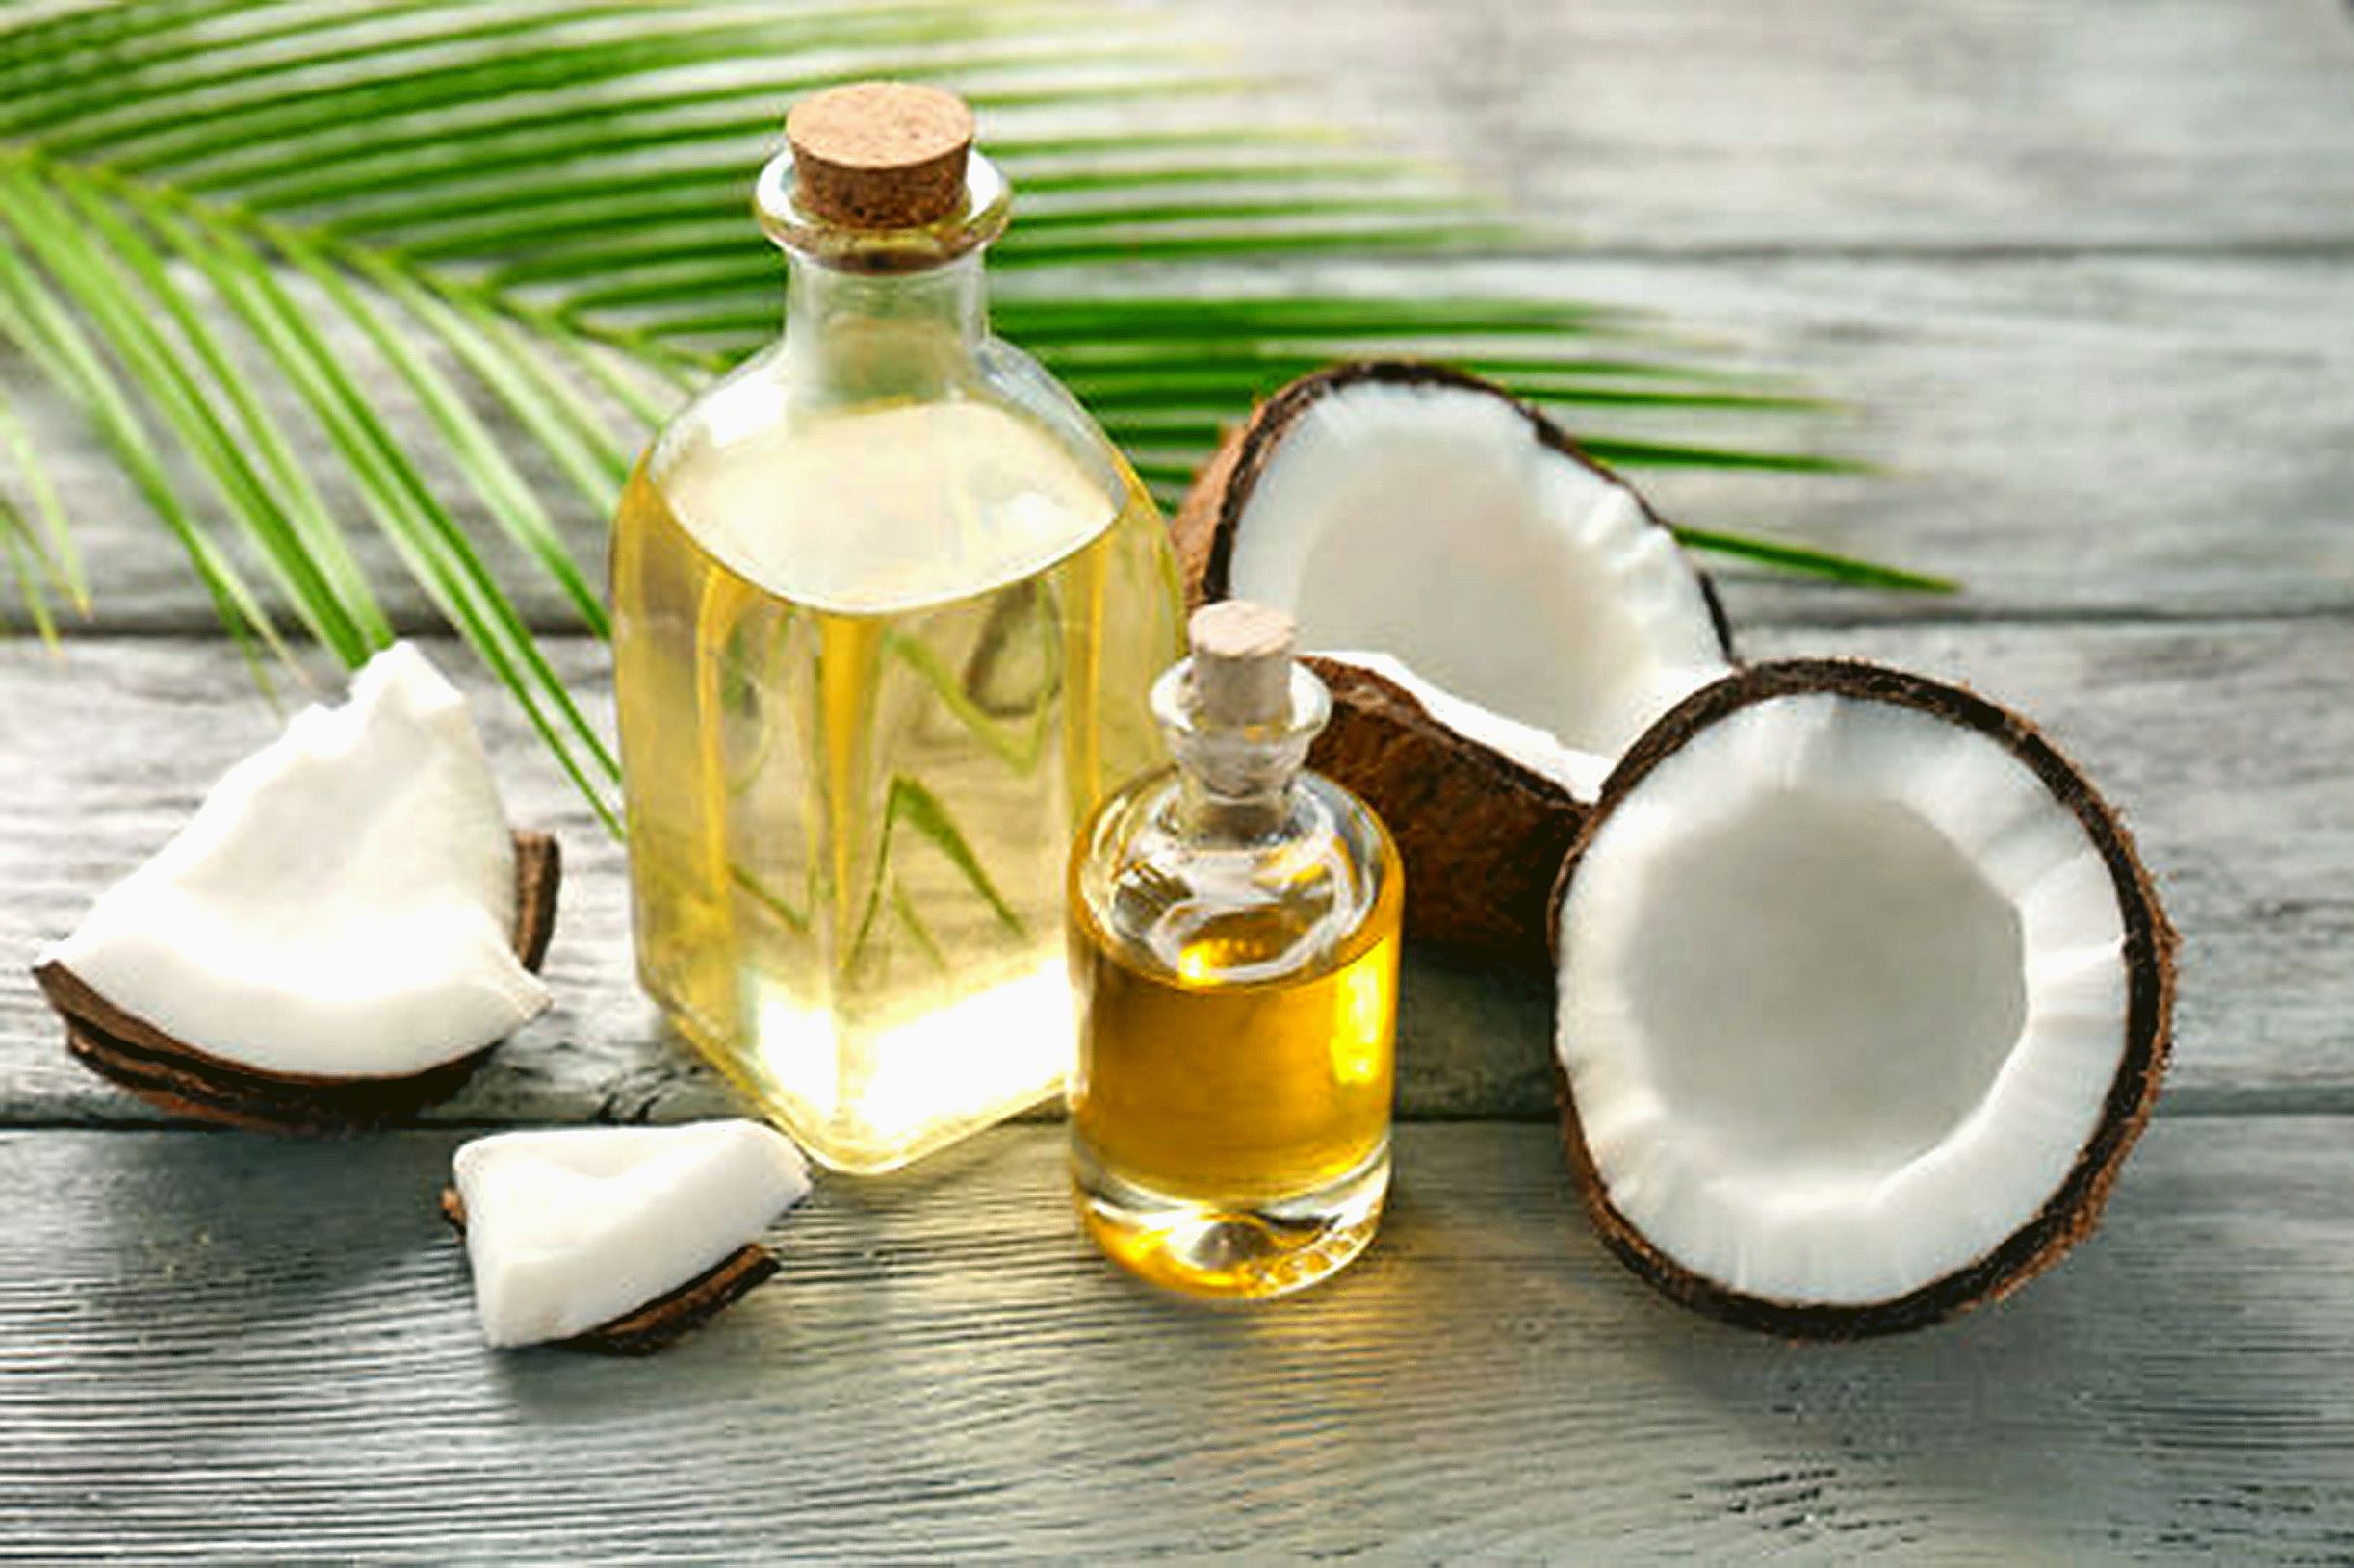 Le cocotier, dont les produits dérivés sont très en vogue, a tous les atouts pour offrir de belles opportunités économiques. Photo Tahiti Infos